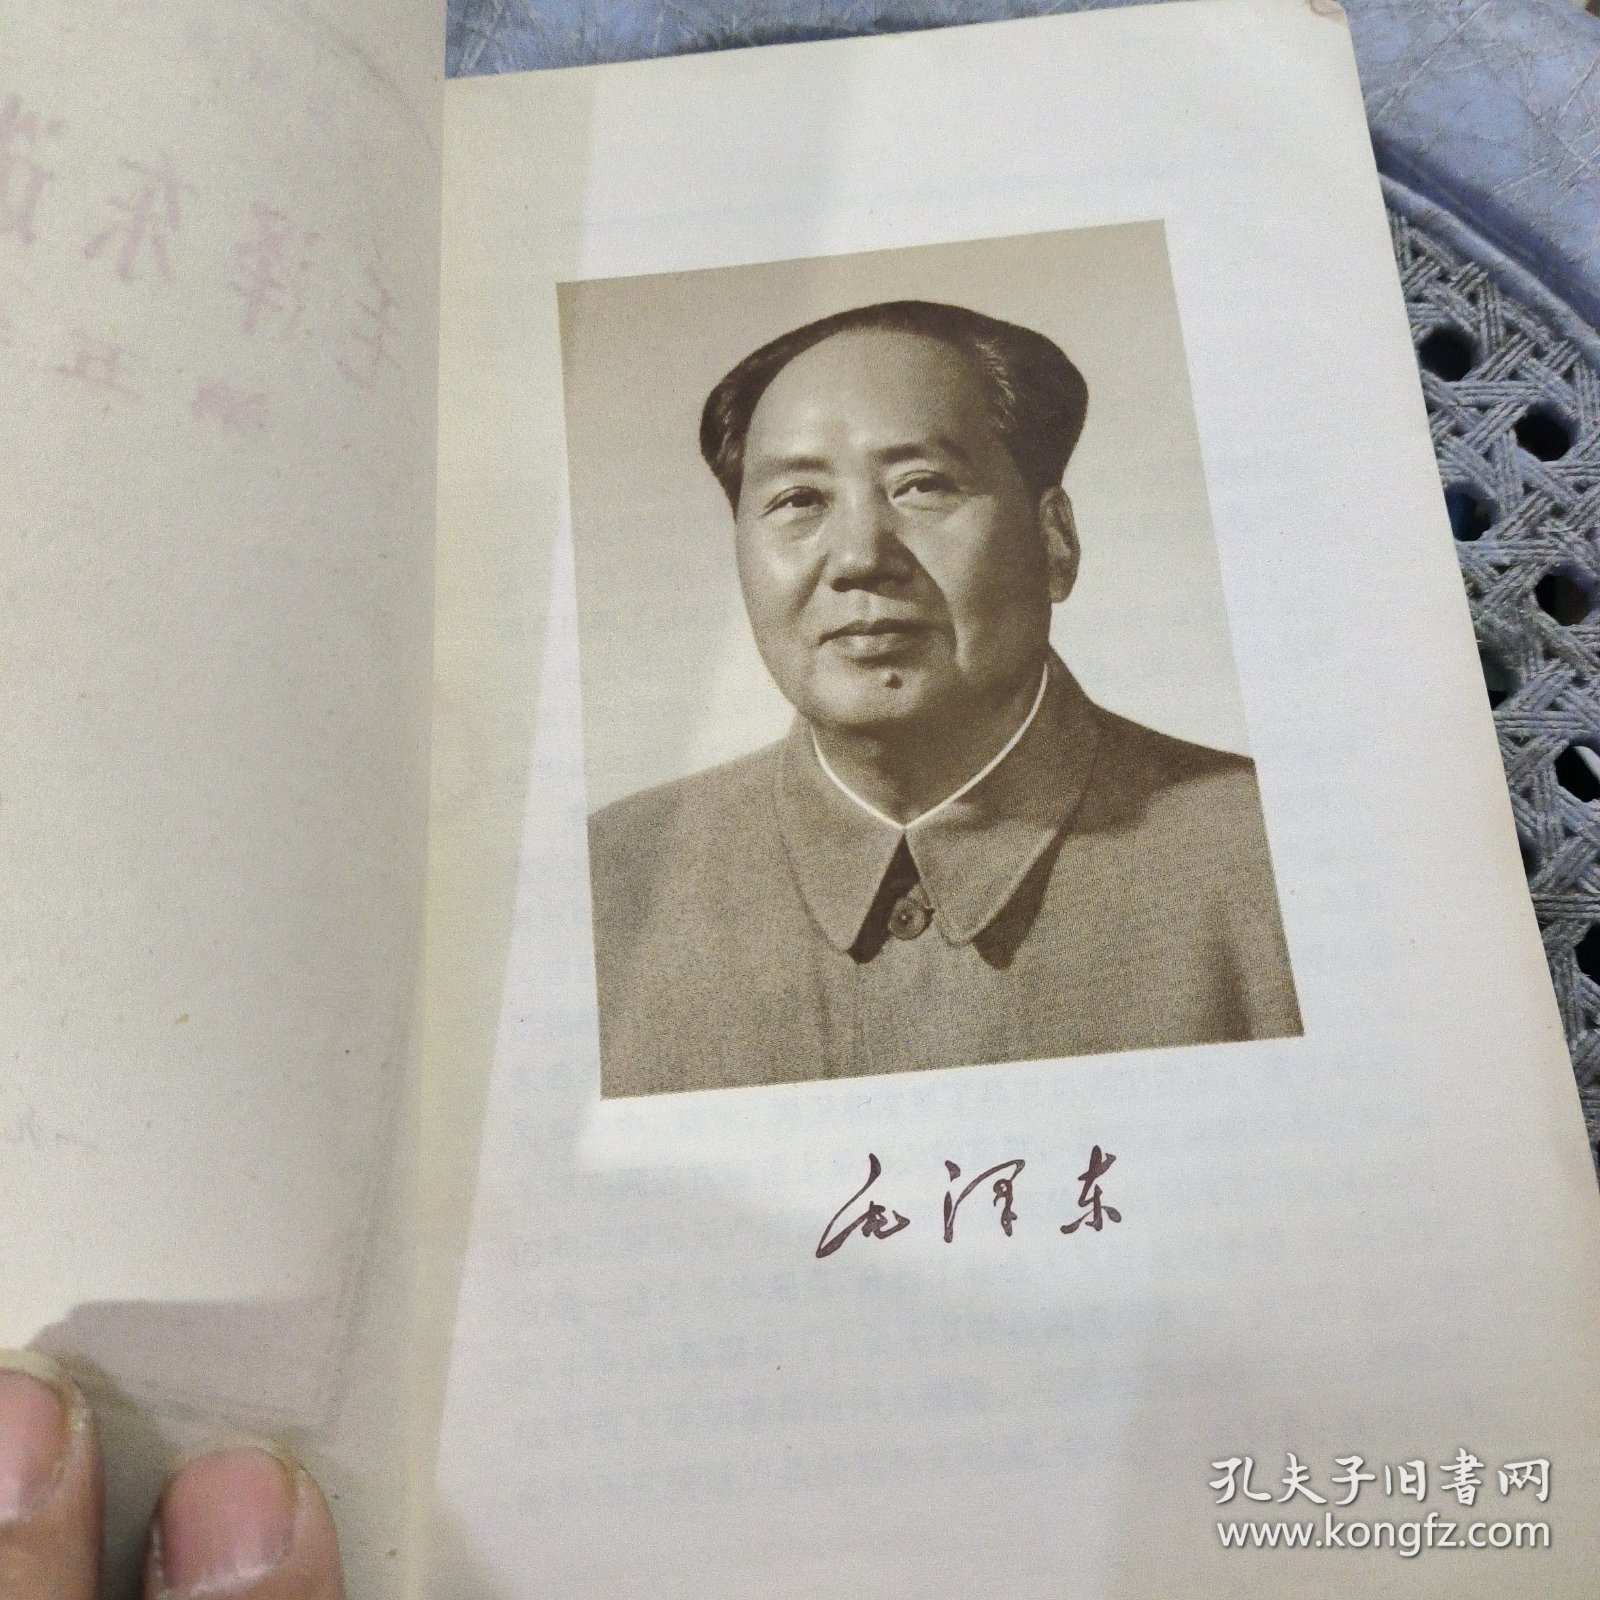 毛泽东选集（第五卷）有墨迹见图